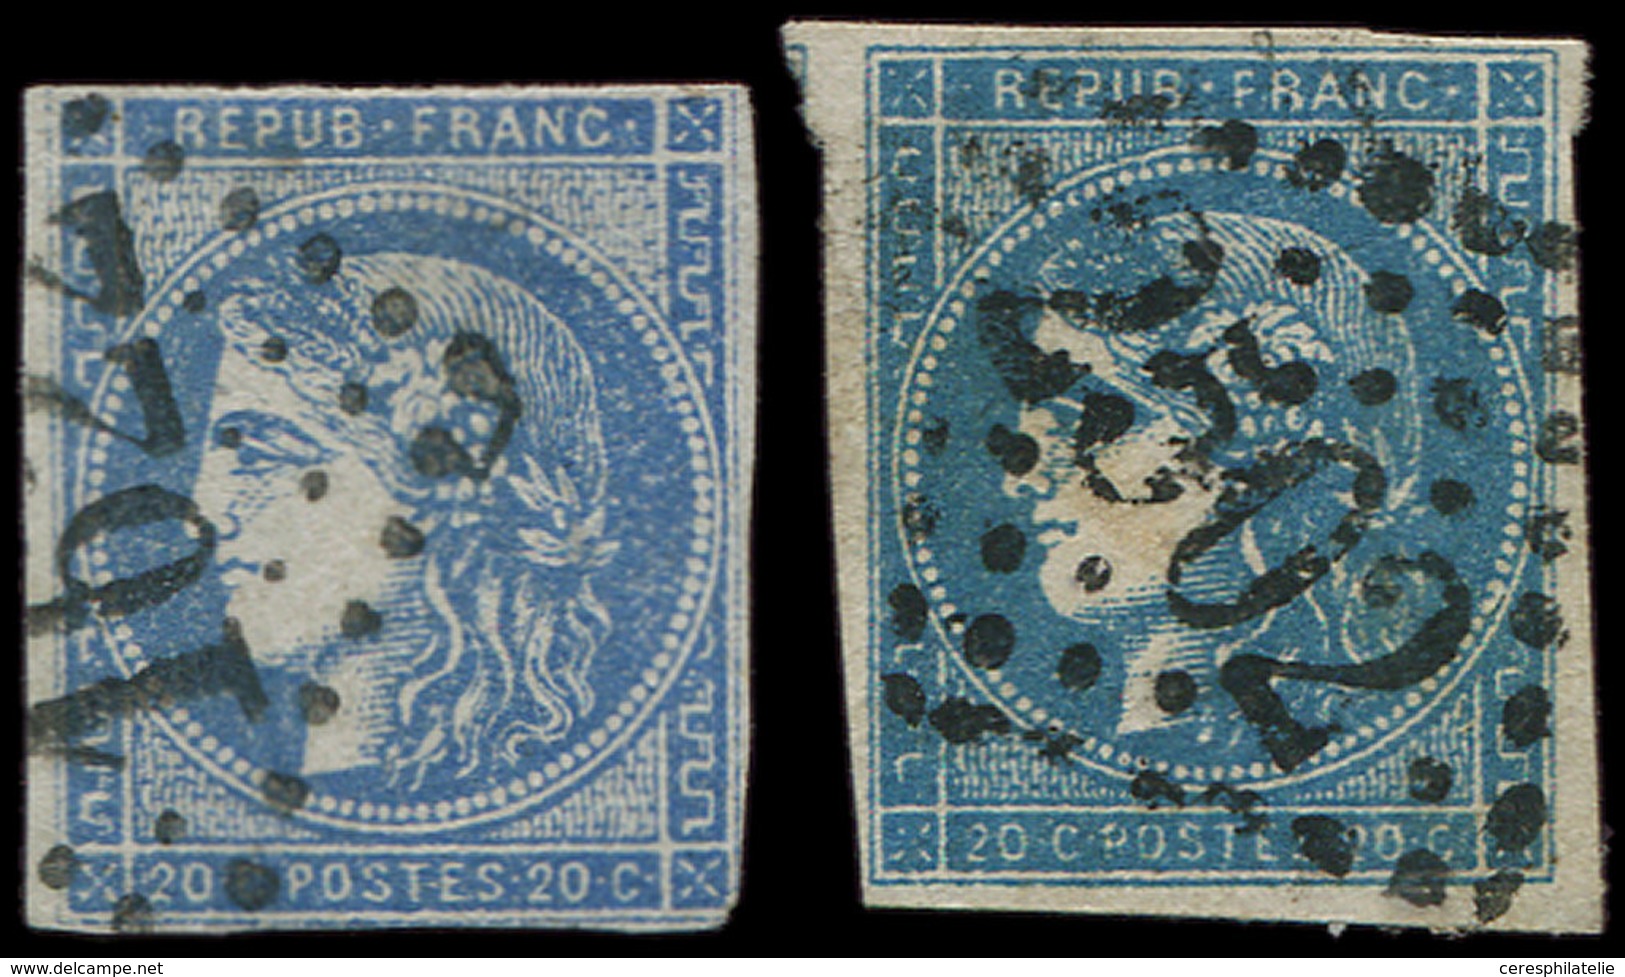 EMISSION DE BORDEAUX - 45Cb 20c. OUTREMER, T II, R III, Obl., Défectueux Mais Superbe Nuance Bien Caractéristique - 1870 Bordeaux Printing